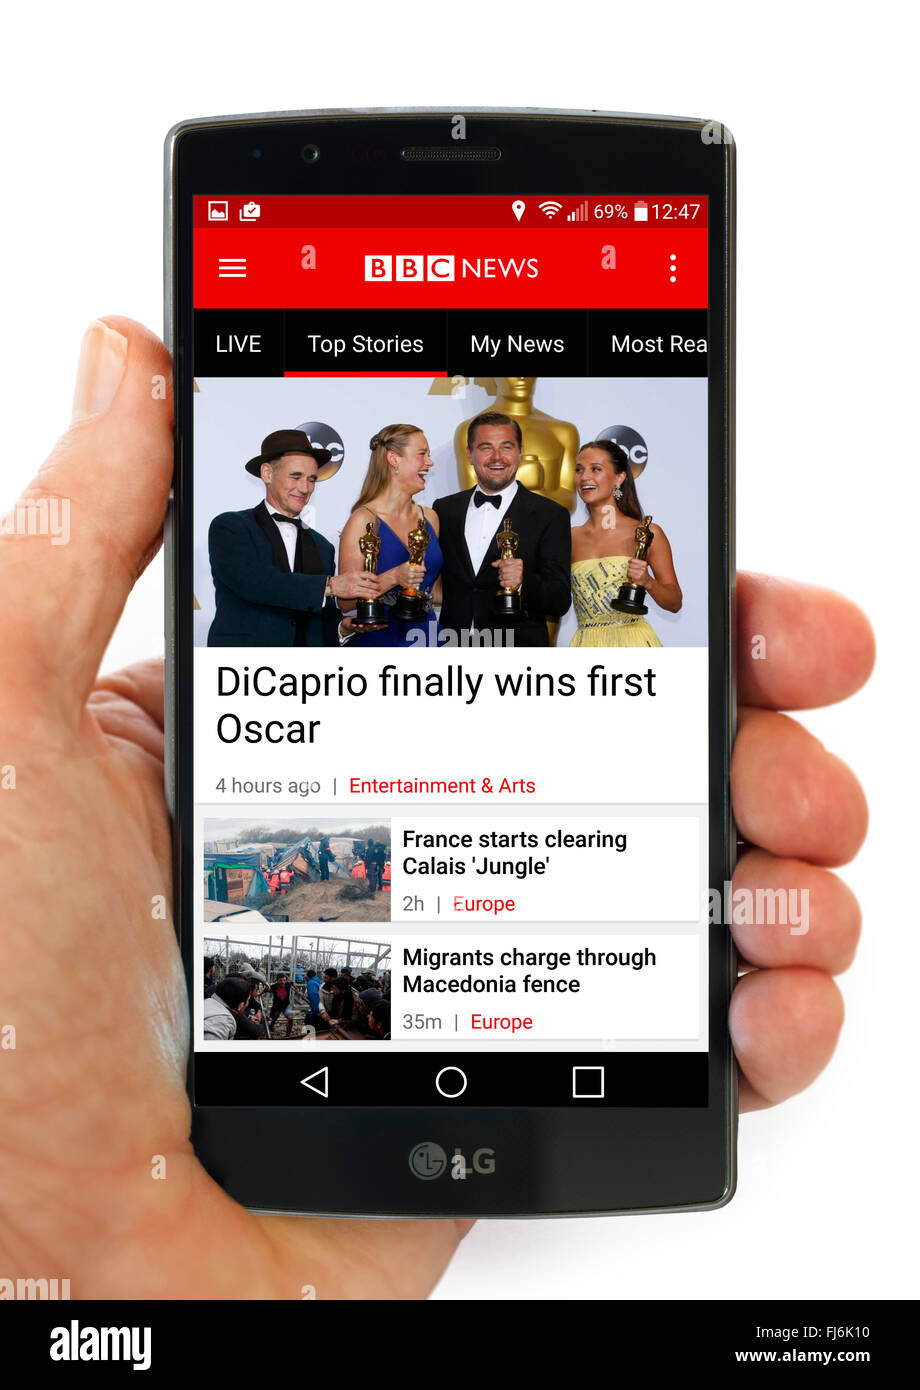 La BBC News App sur un LG G4 smartphone Android 5,5 pouces Banque D'Images